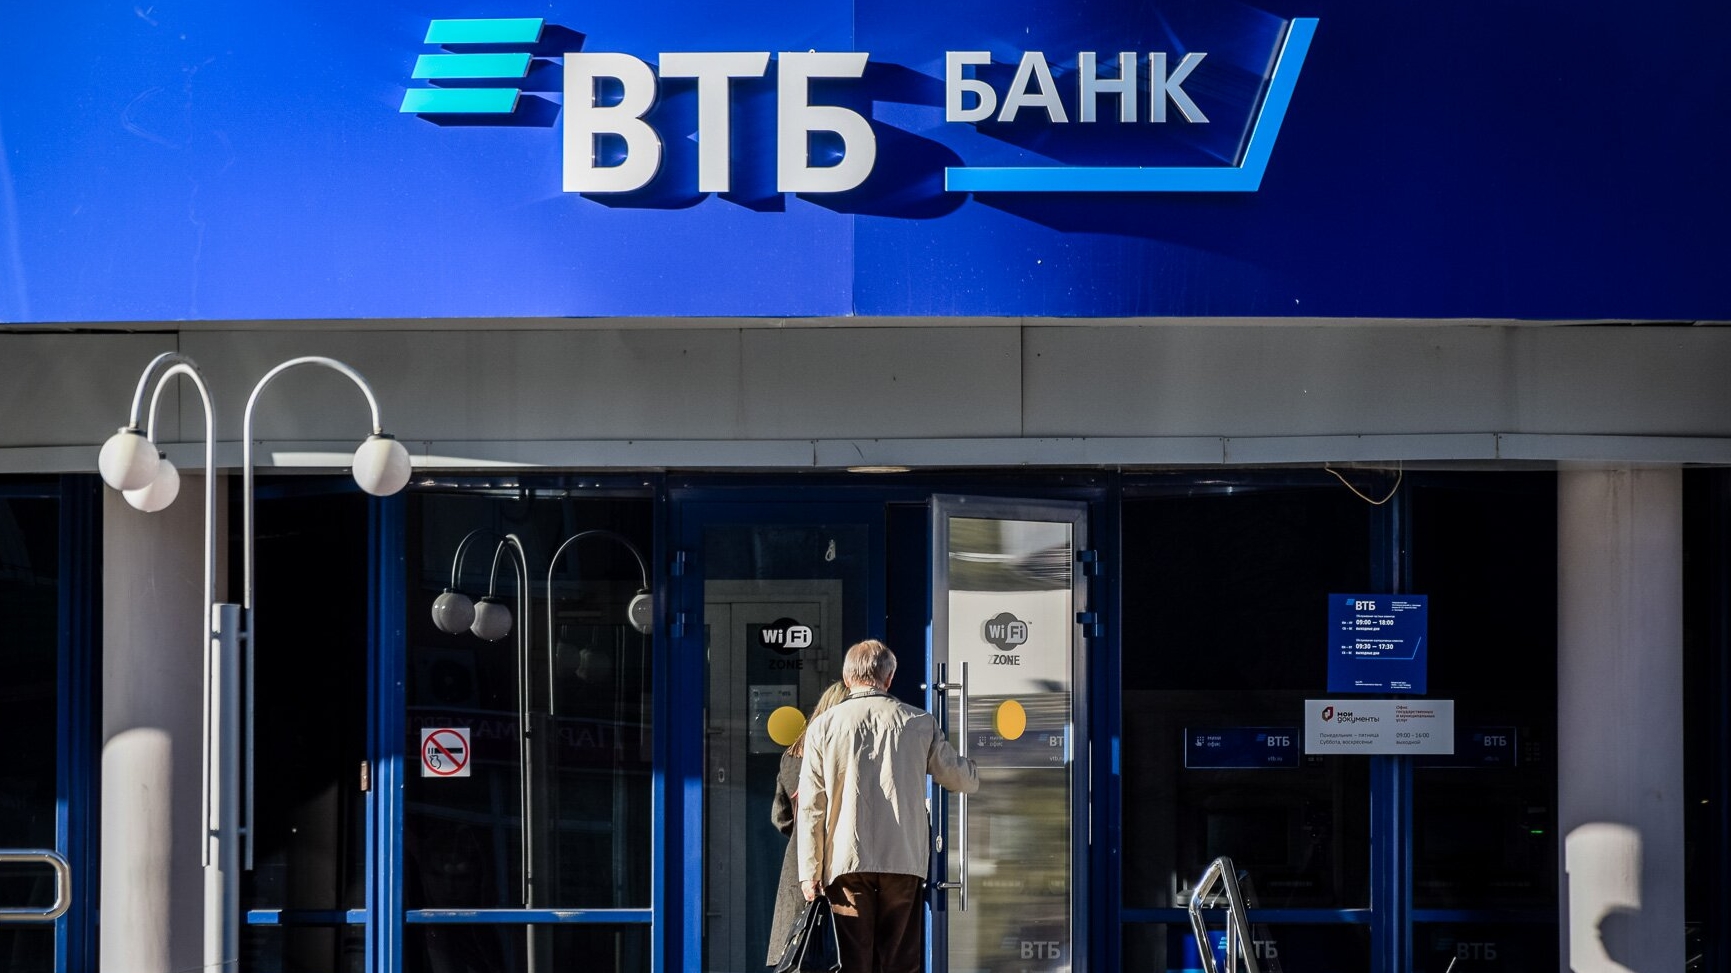 ВТБ подал заявки на регистрацию товарных знаков «VTBPay», «ВТБ Транспорт» и других          